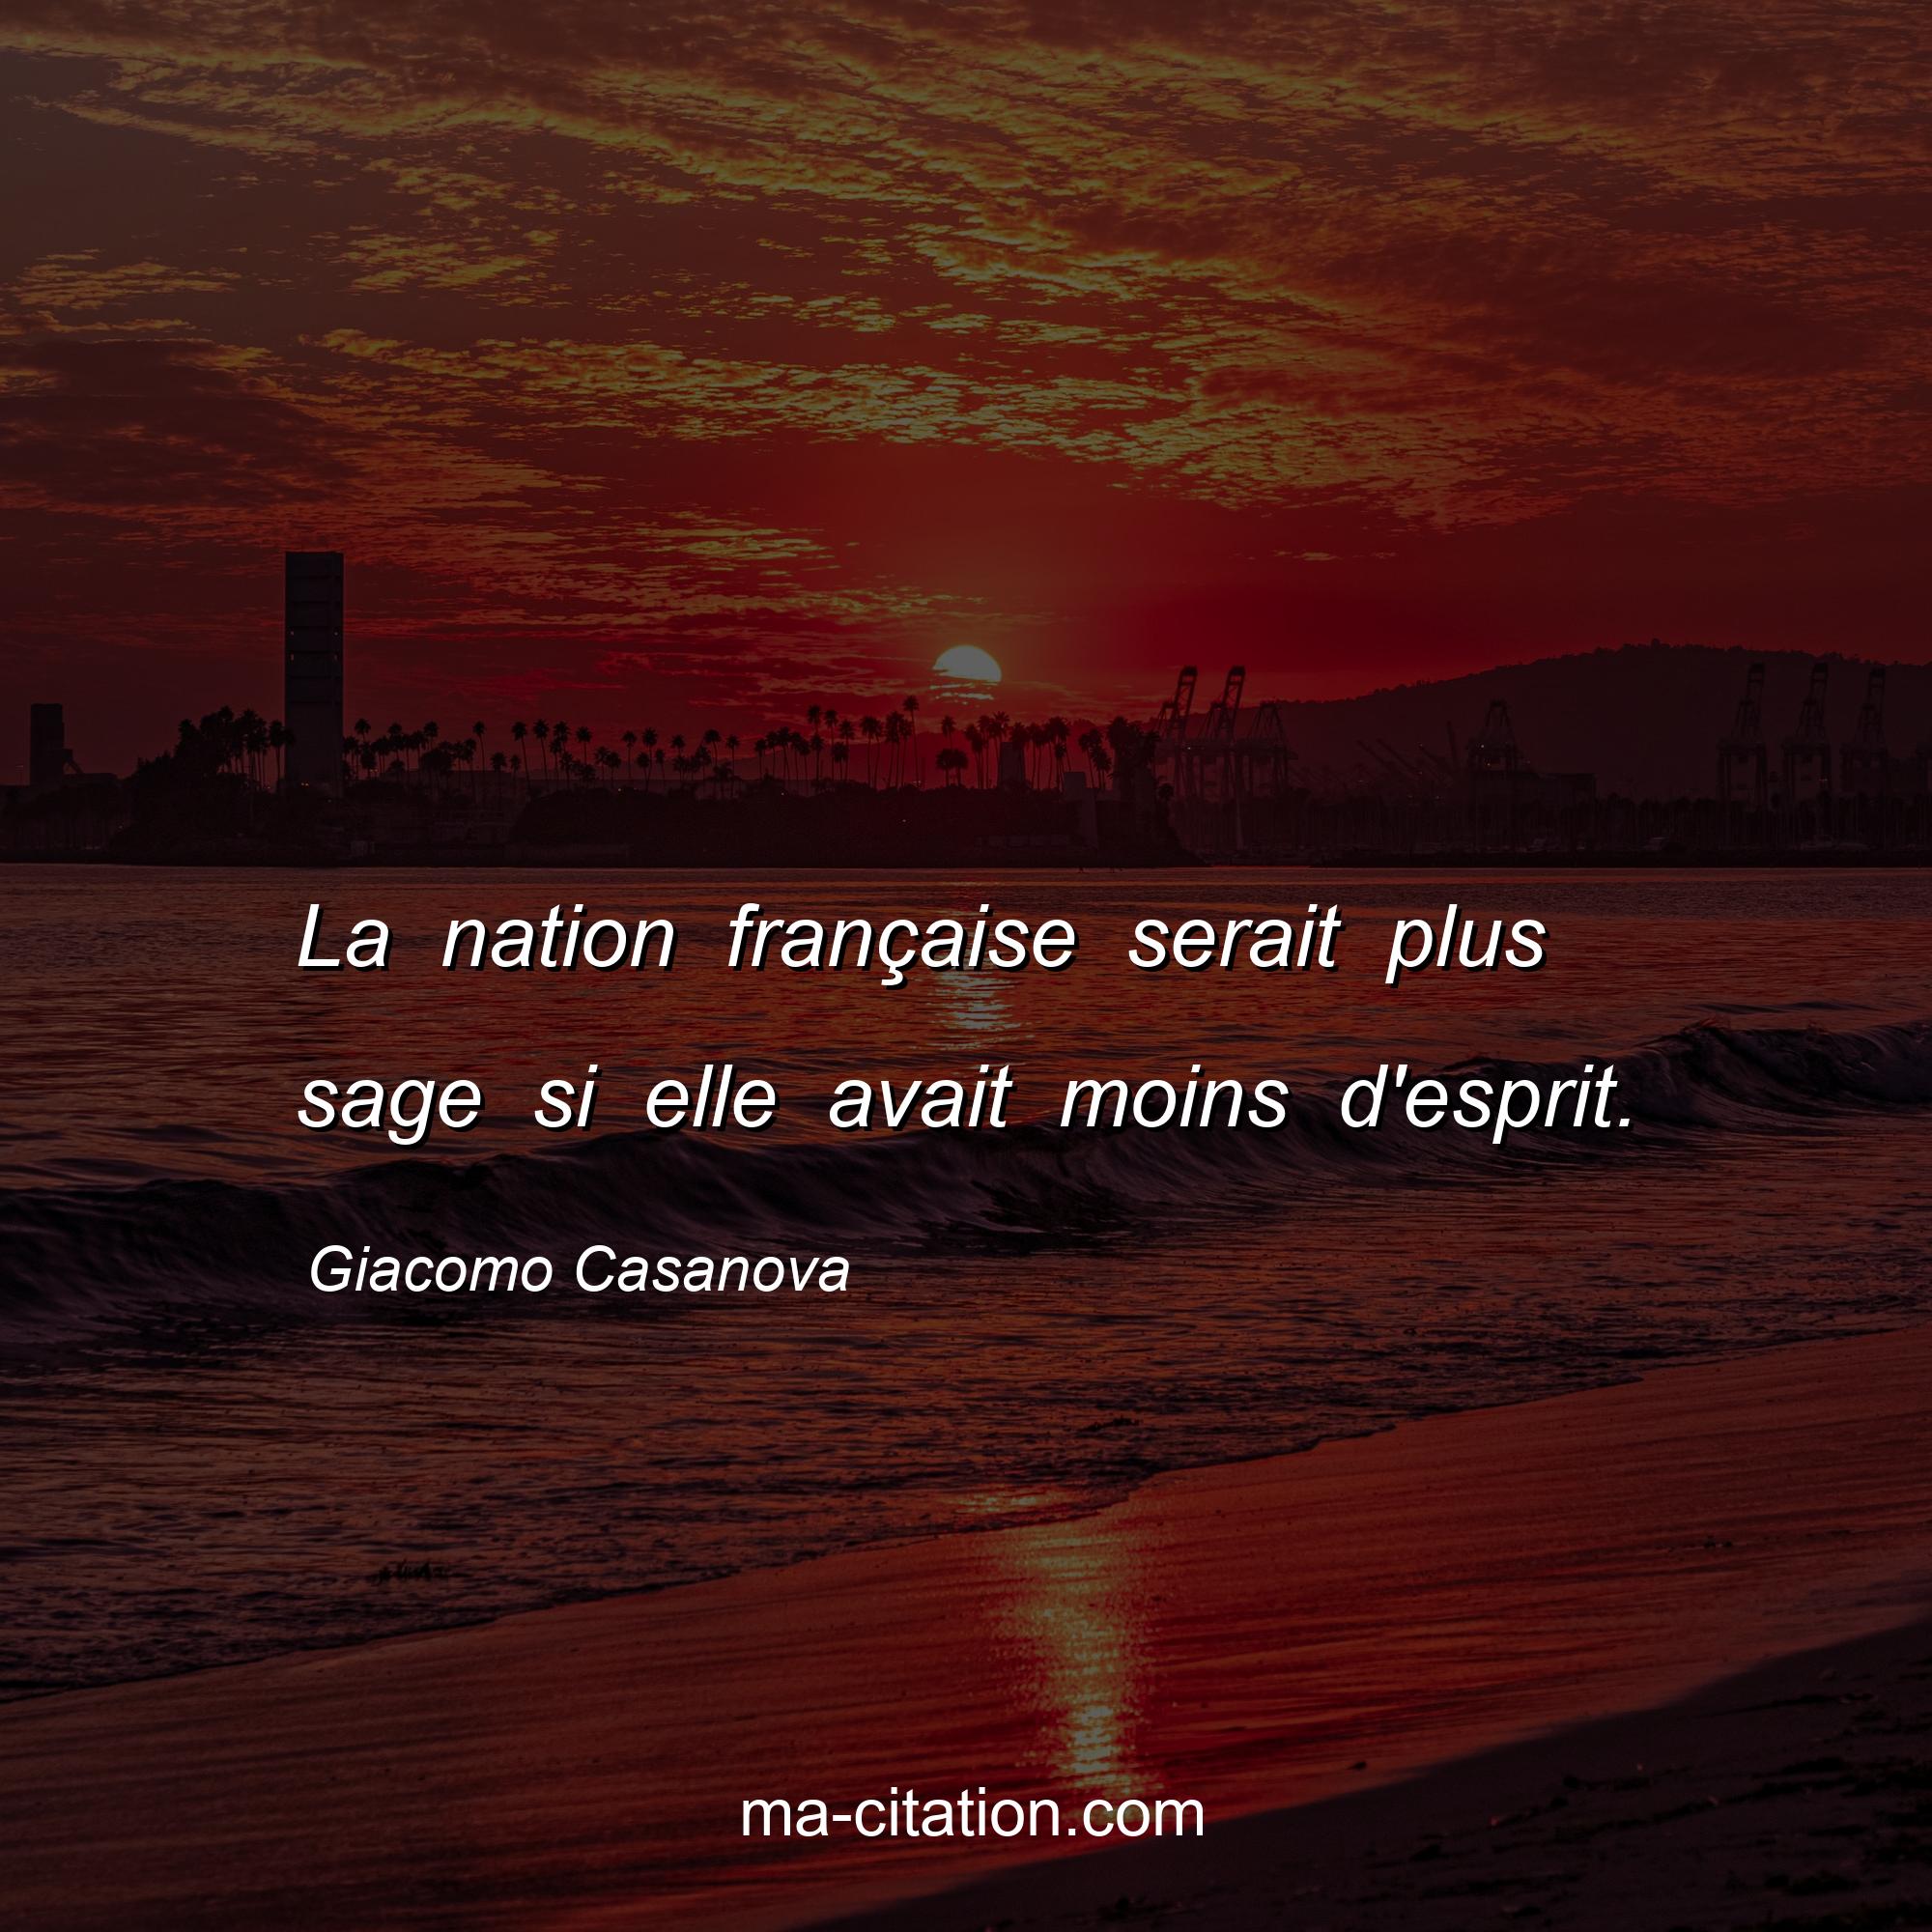 Giacomo Casanova : La nation française serait plus sage si elle avait moins d'esprit.